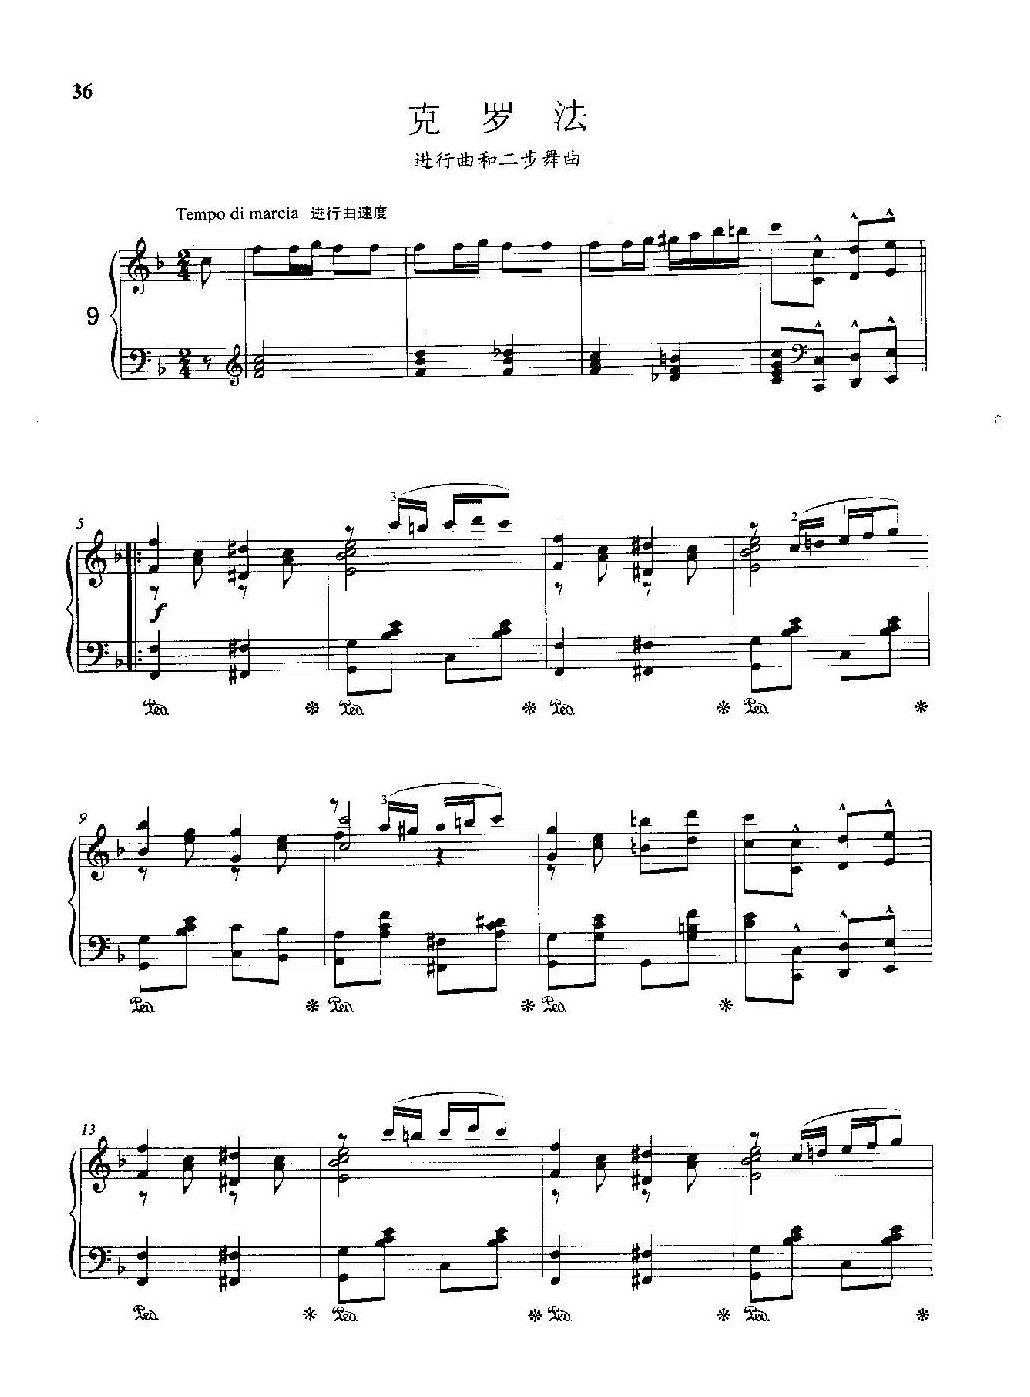 雷格泰姆钢琴乐谱《克罗法》雷格泰姆之王斯科特·乔普林